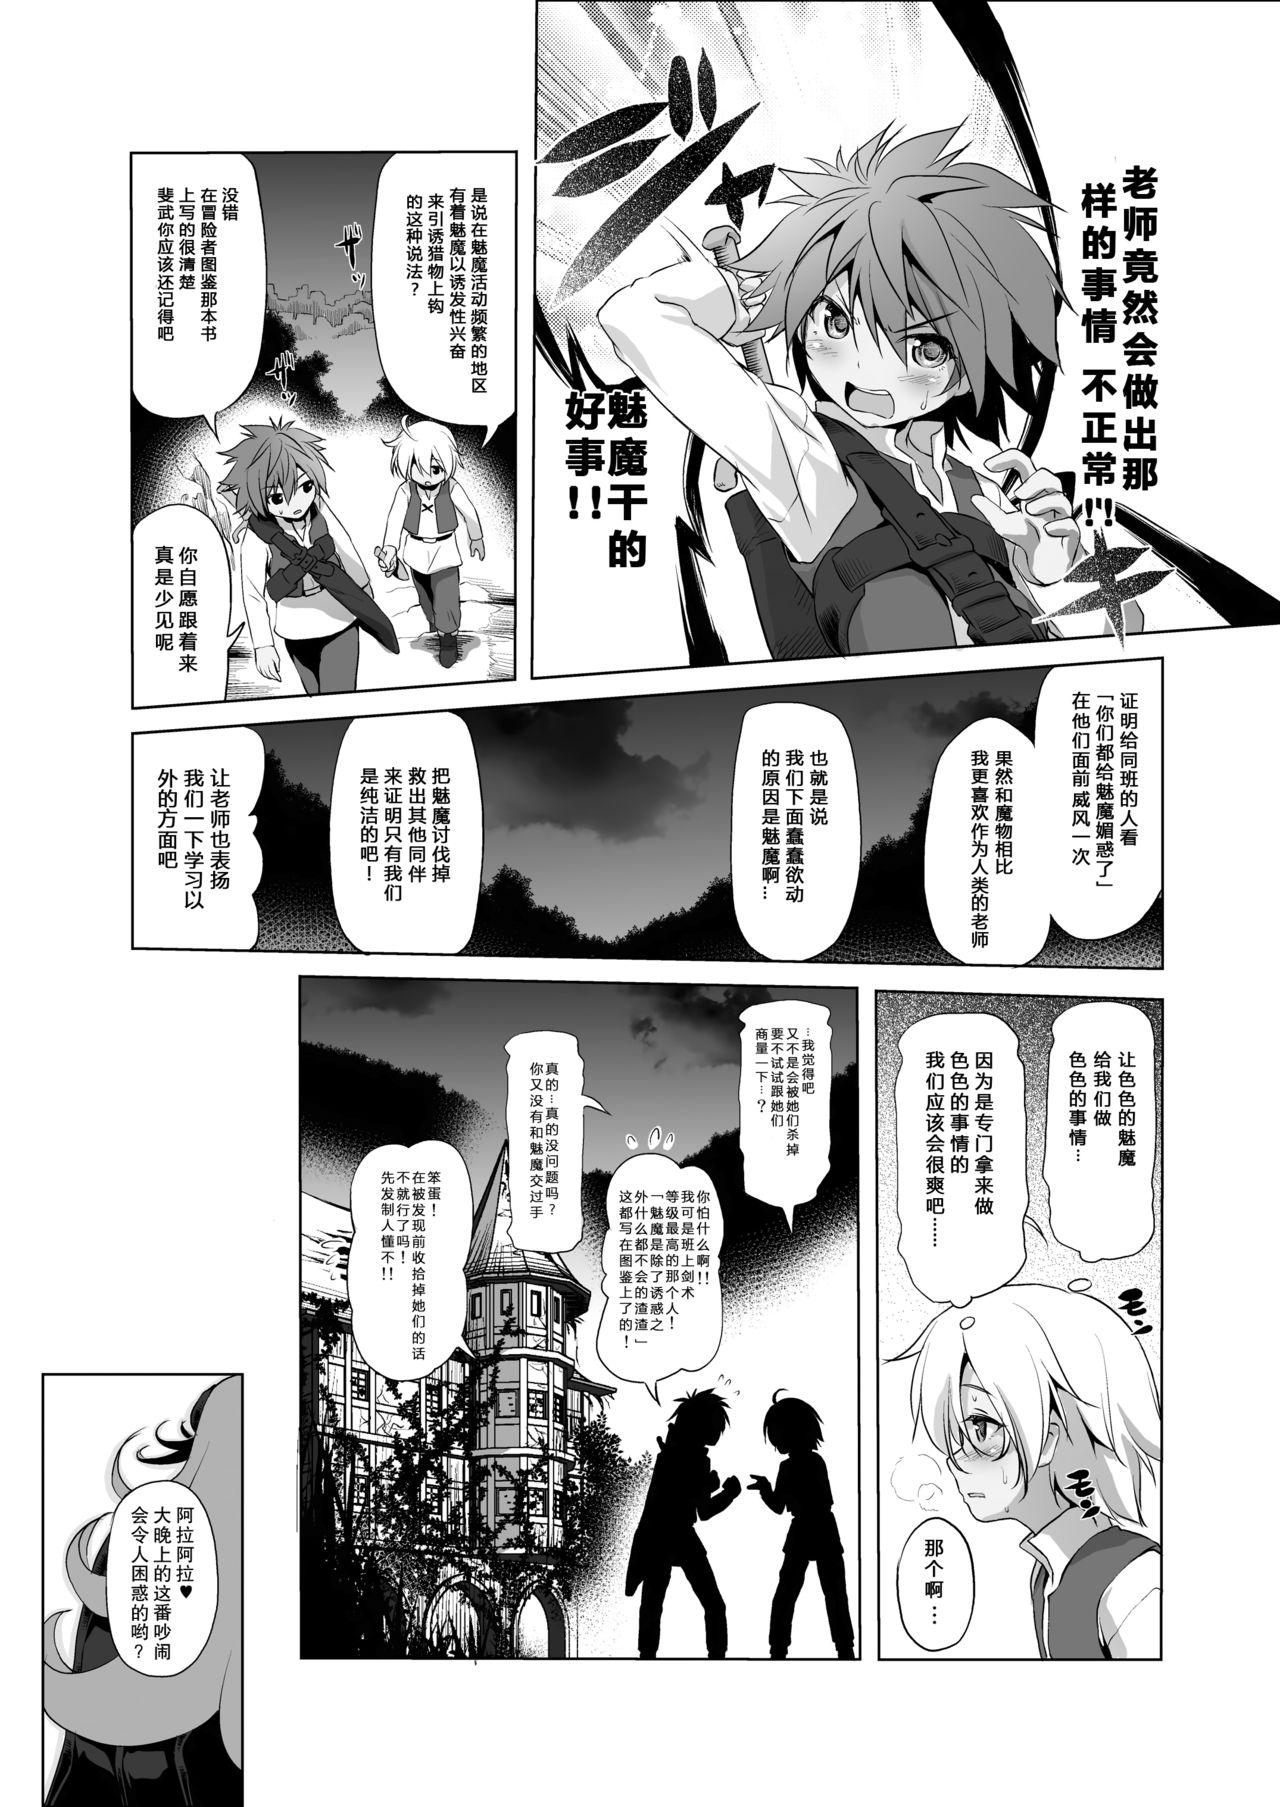 One Makotoni Zannen desu ga Bouken no Sho 3 wa Kiete Shimaimashita. - Original Phat - Page 11